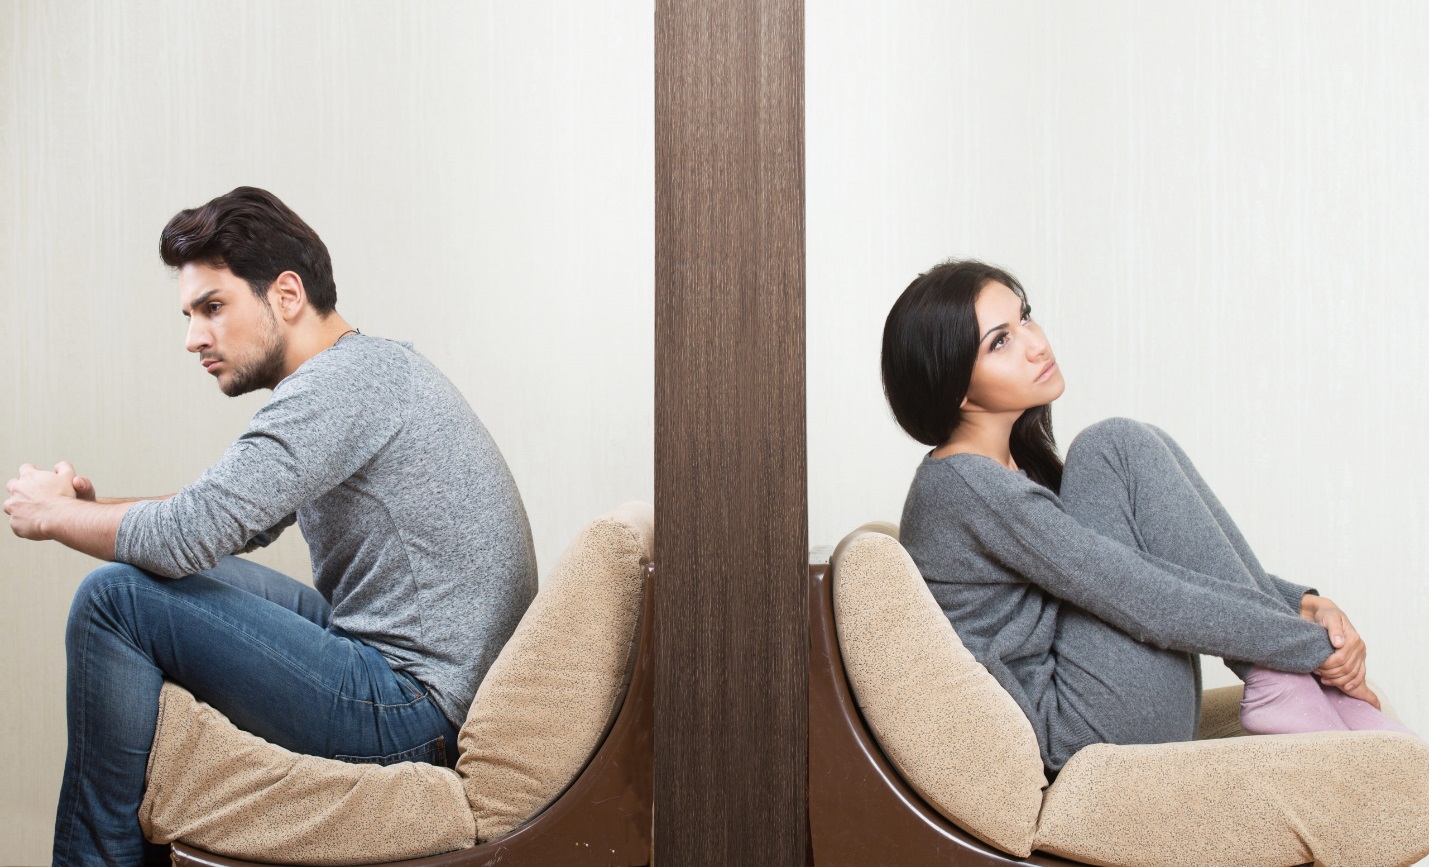 Как пережить развод и начать строить новые отношения Личная жизнь женщины после развода Как оставить прошлое позади и двигаться дальше Самые распространенные ошибки женщин